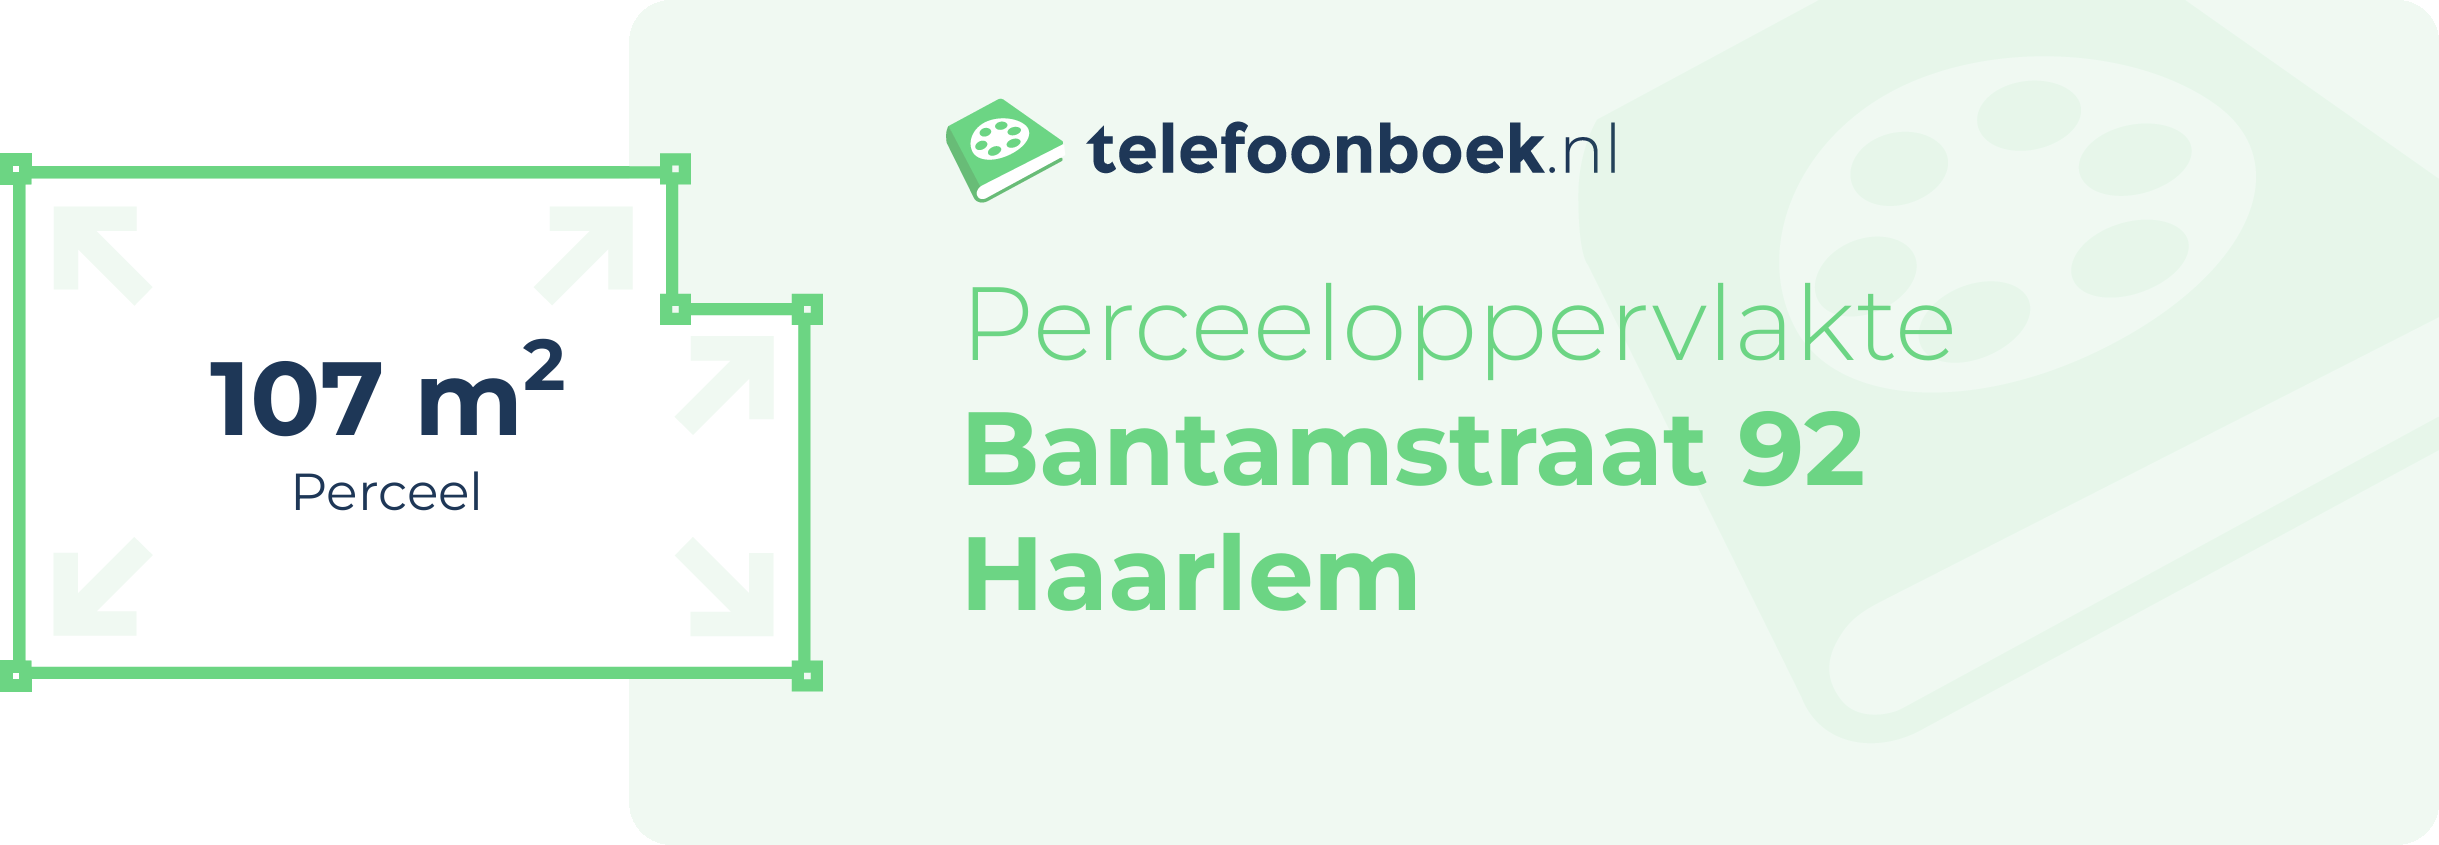 Perceeloppervlakte Bantamstraat 92 Haarlem